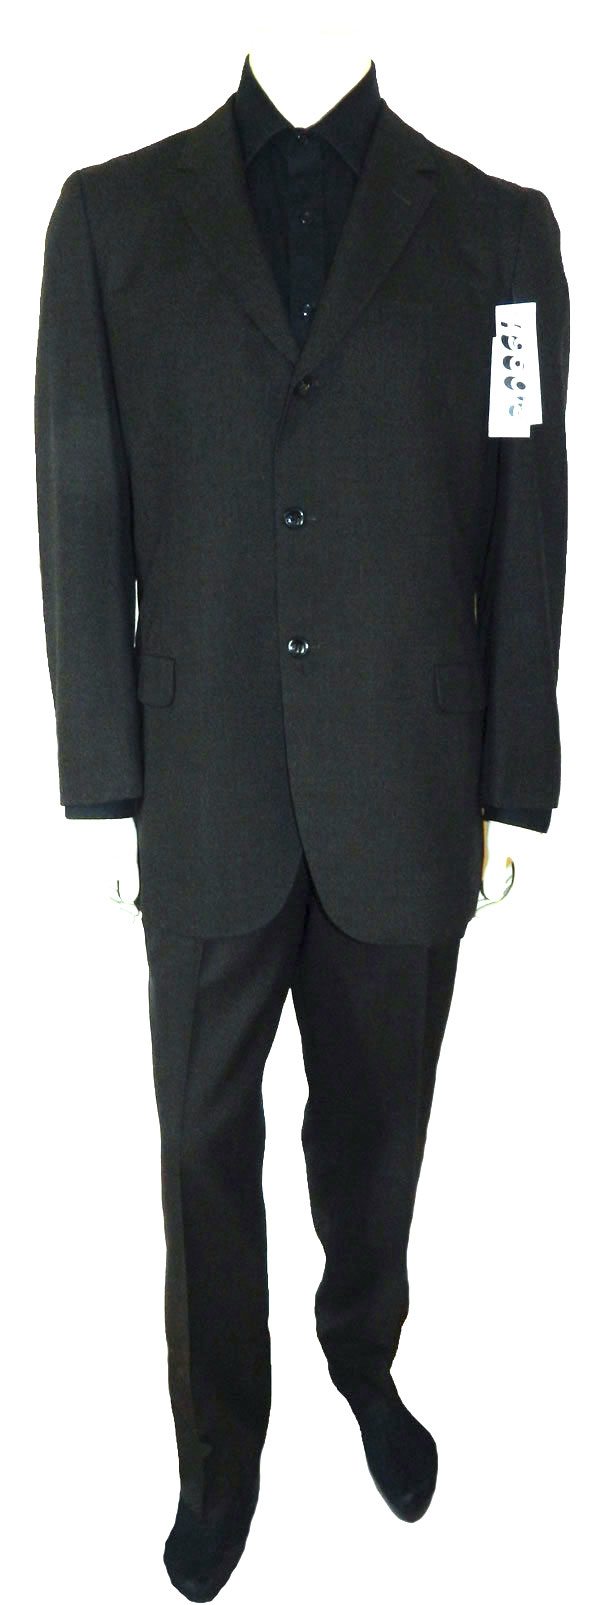 1960s suit